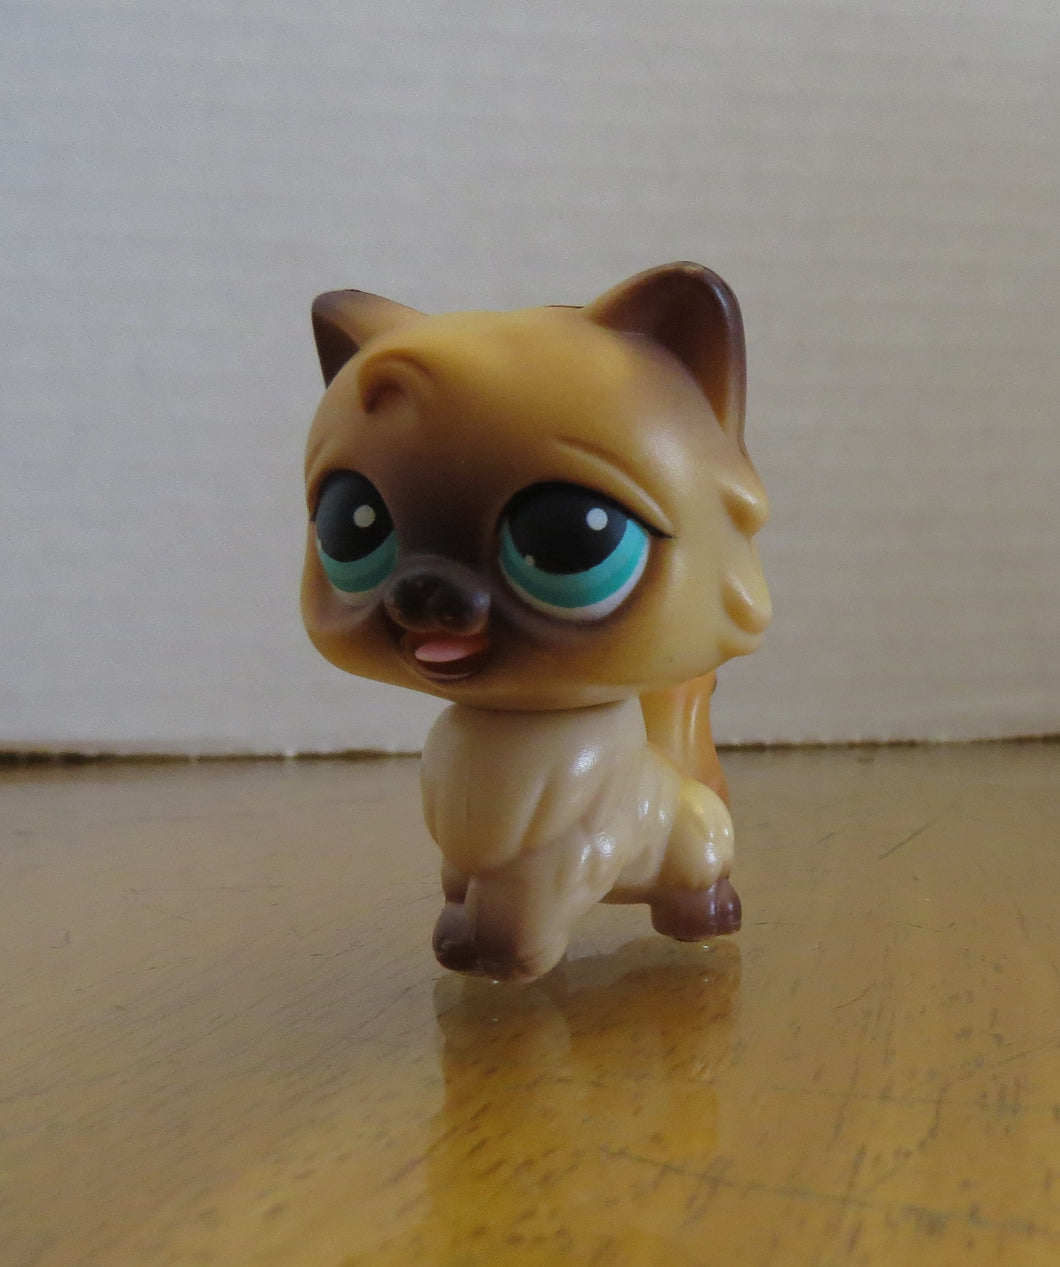 2005  LPS - LITTLEST PET SHOP - CAT / aqua eyes / tongue moves, hard plastic